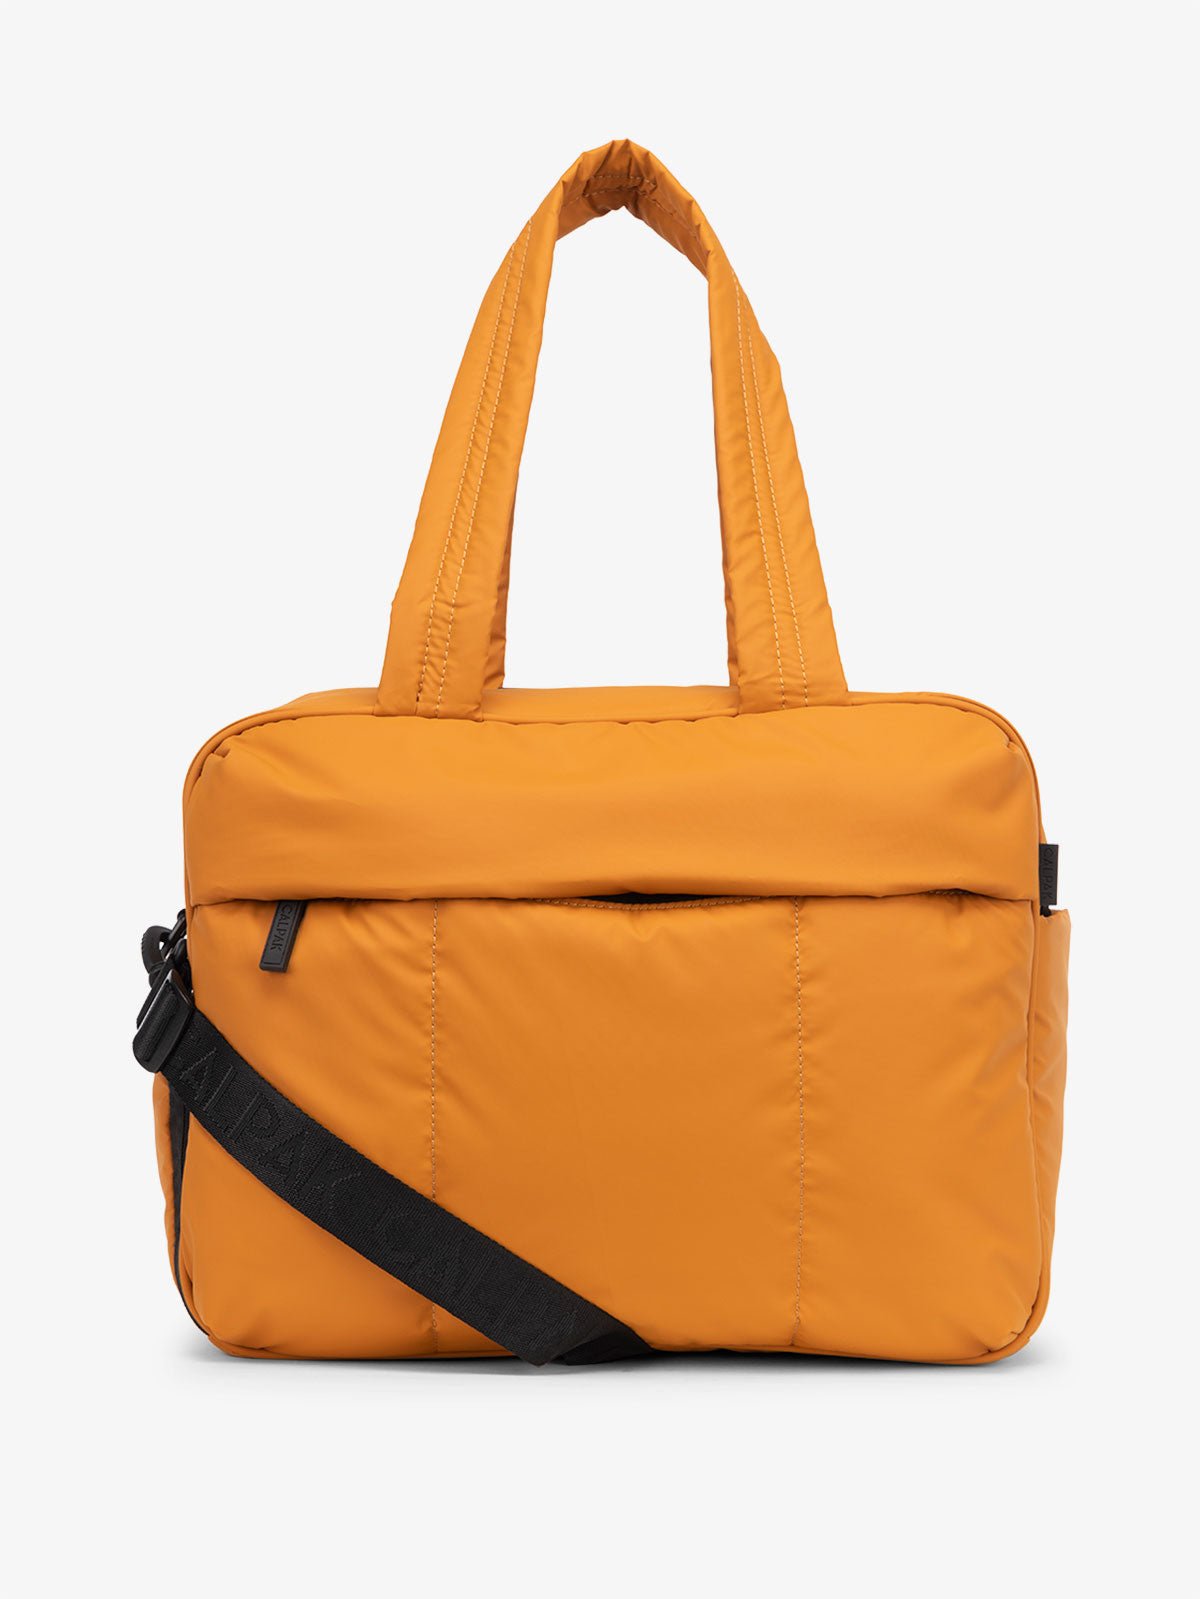 CALPAK Luka Duffel Bag in pumpkin